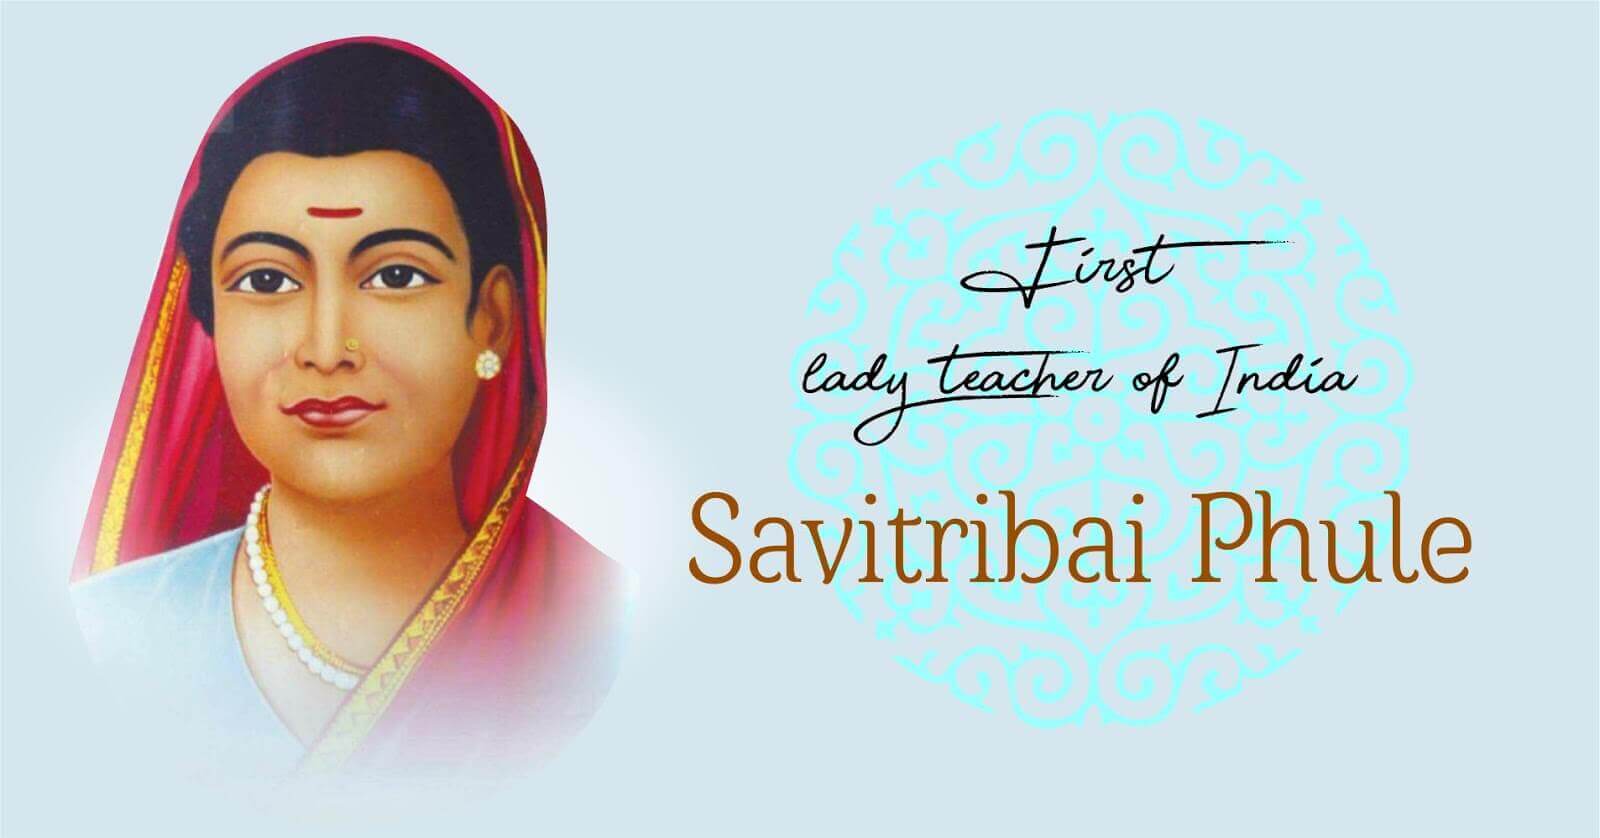 Savitribai Phule biography in Marathi